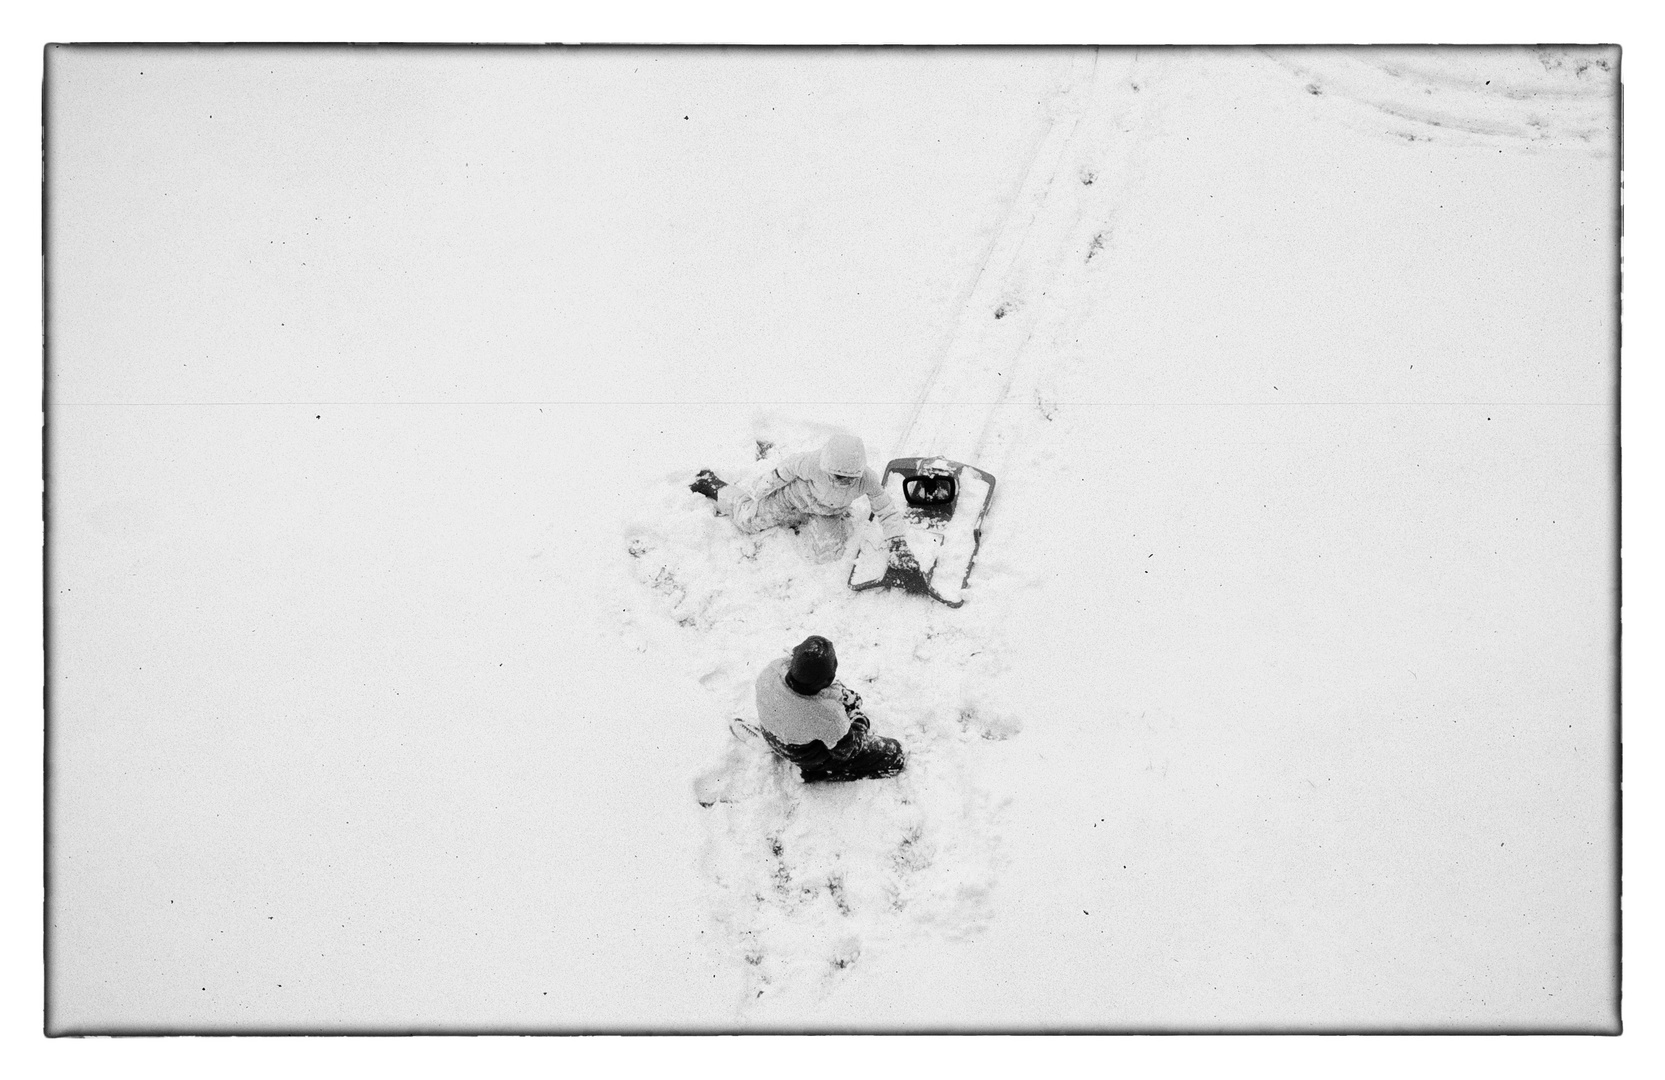 Kinder beim Spielen im Schnee